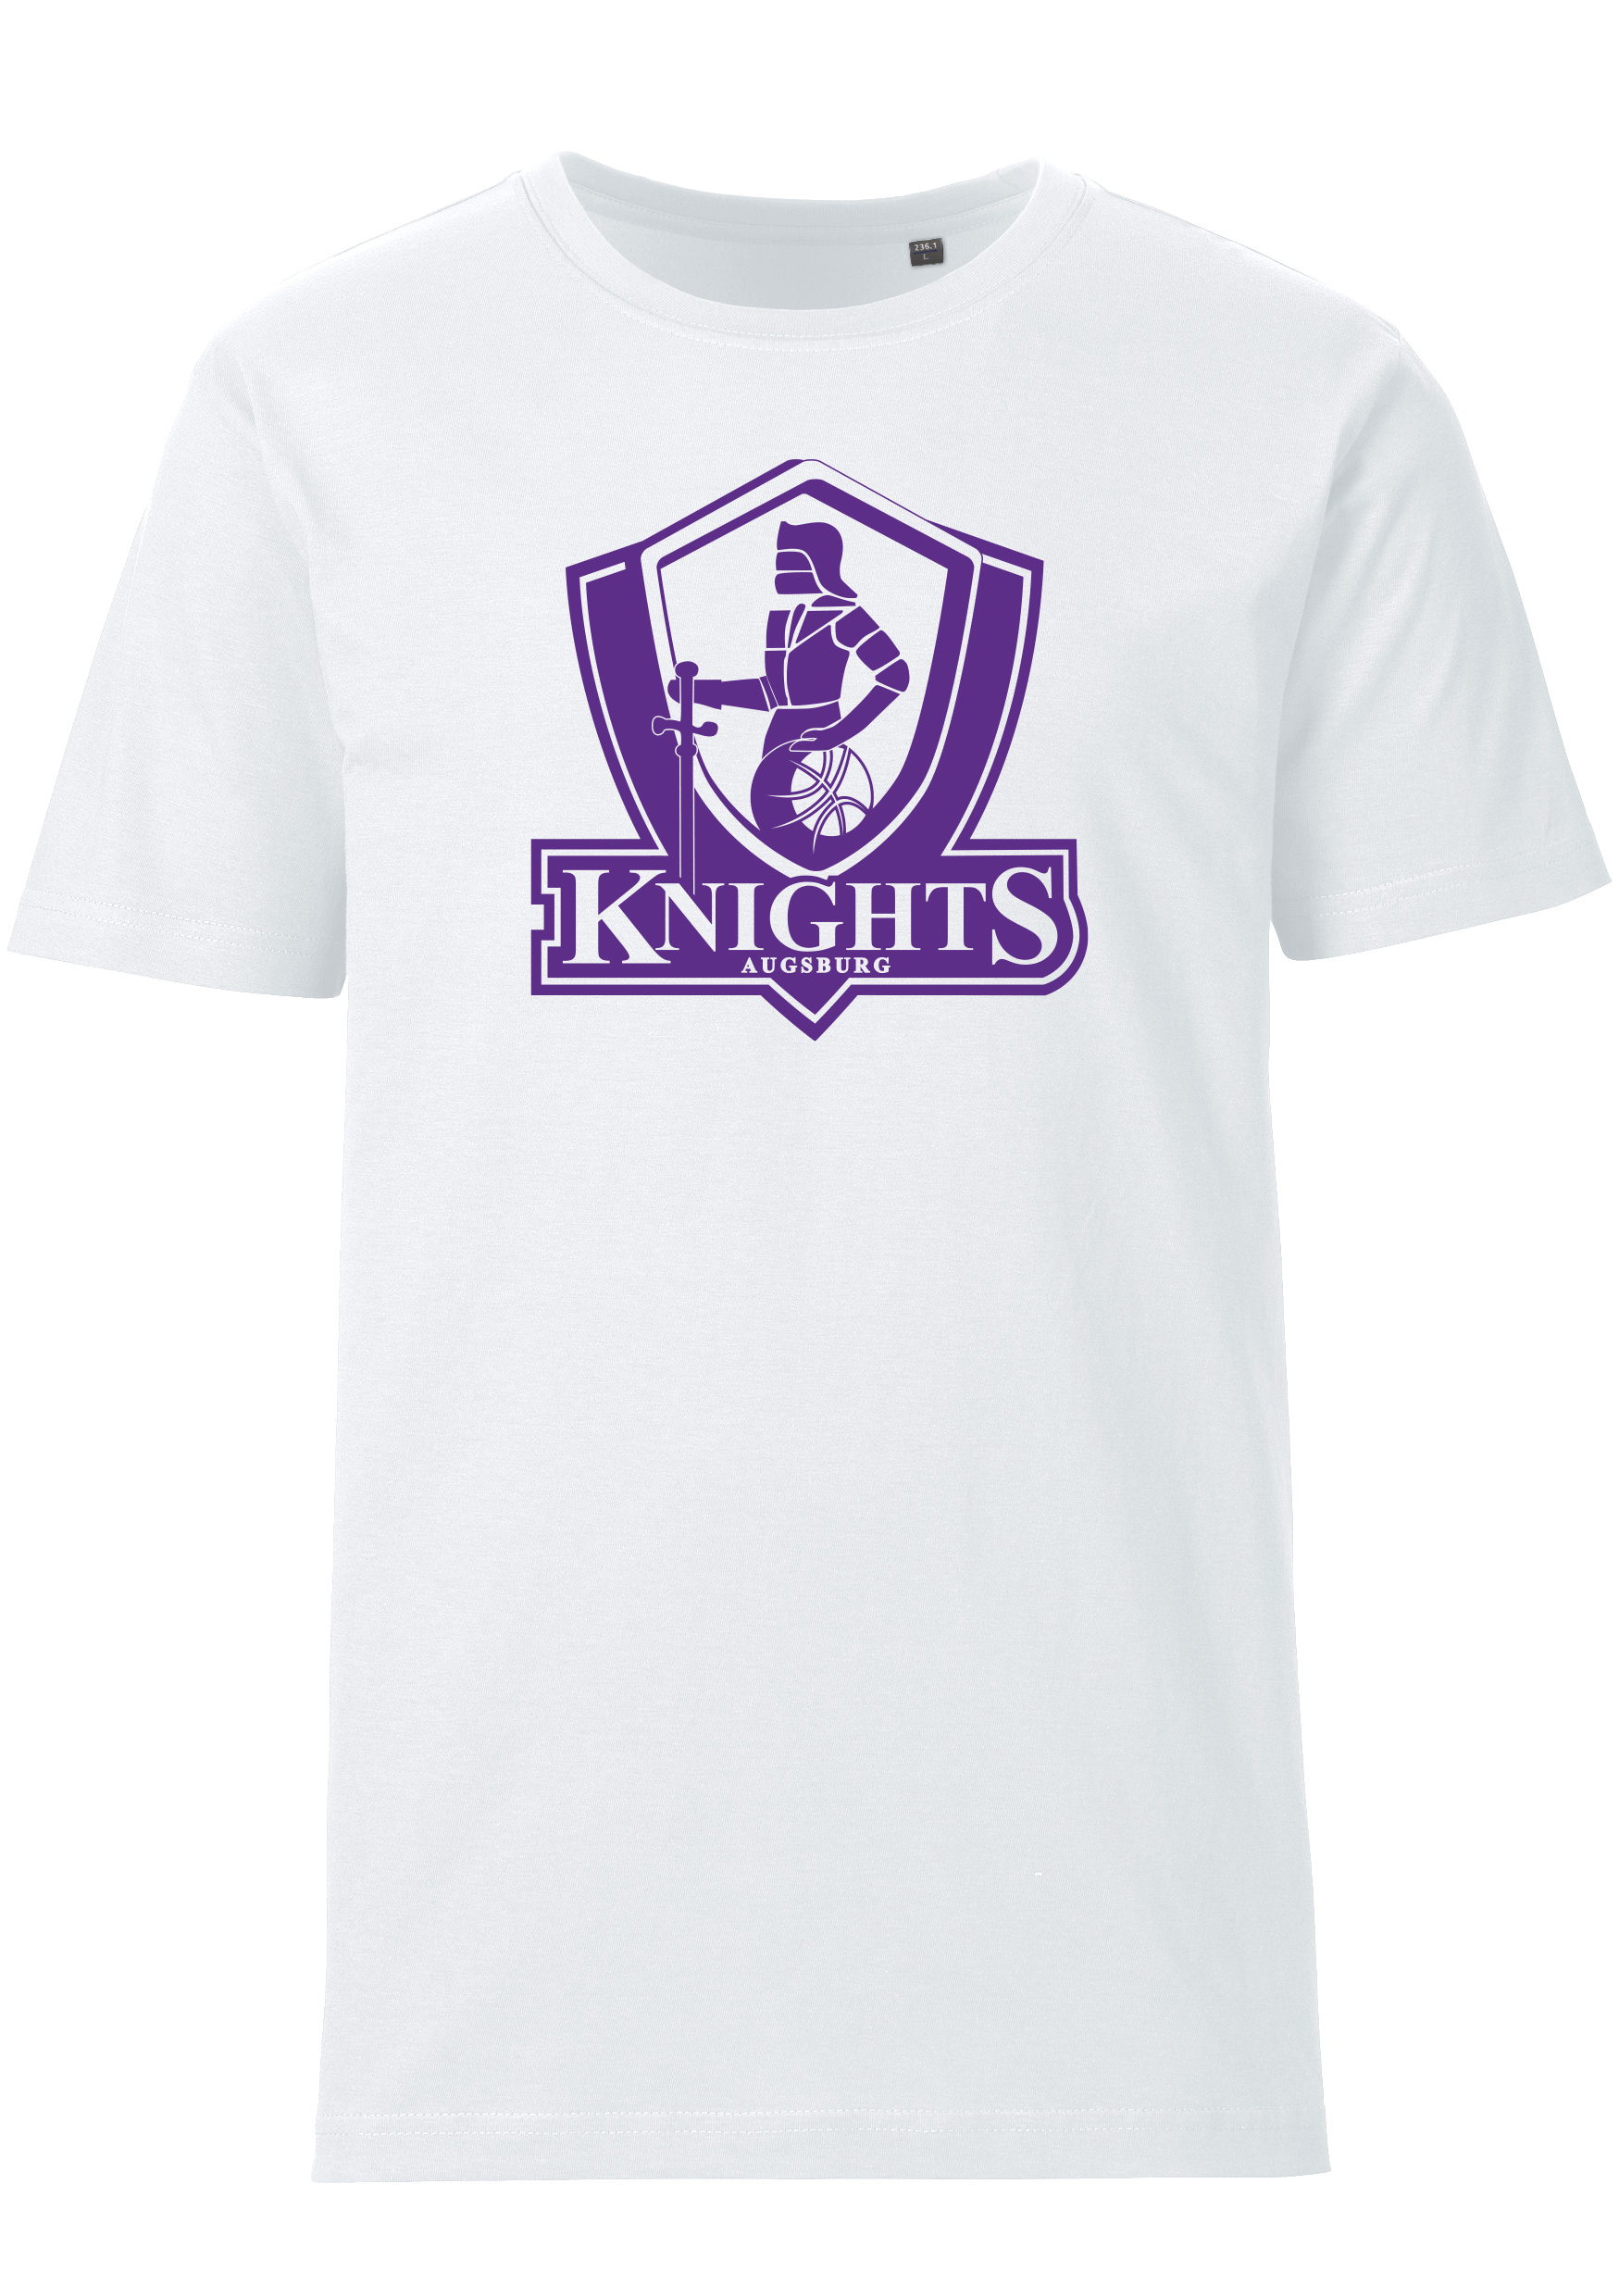 Schwaben Knights T-Shirt